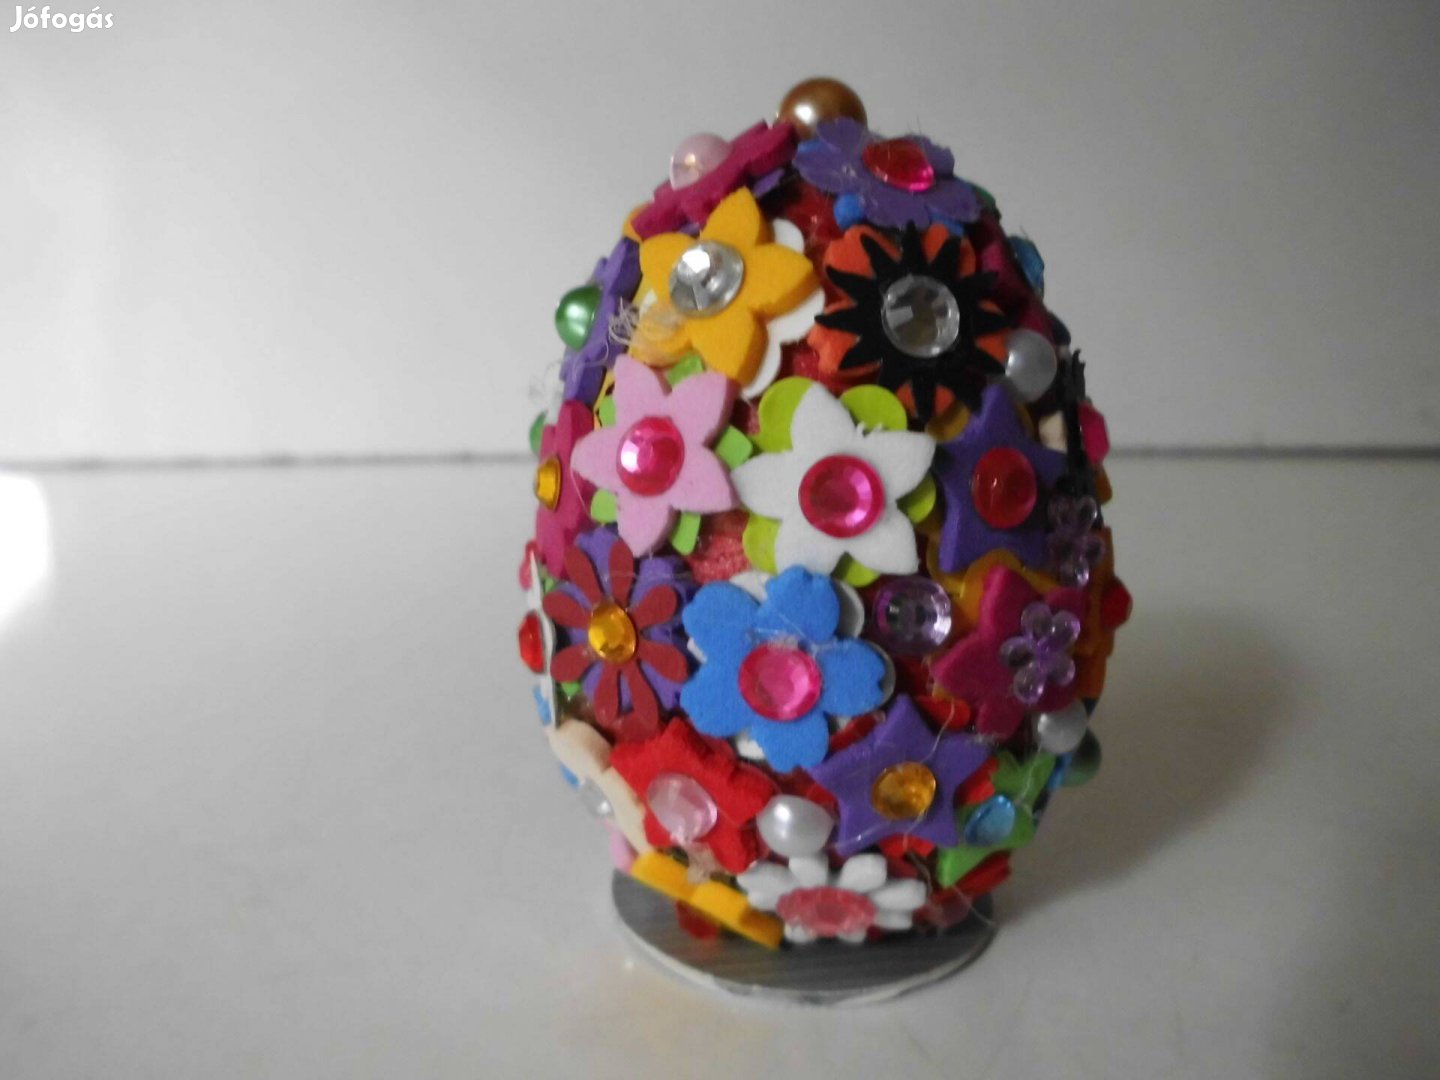 Kézzel készült színes virágos-köves tojás formájú dísz